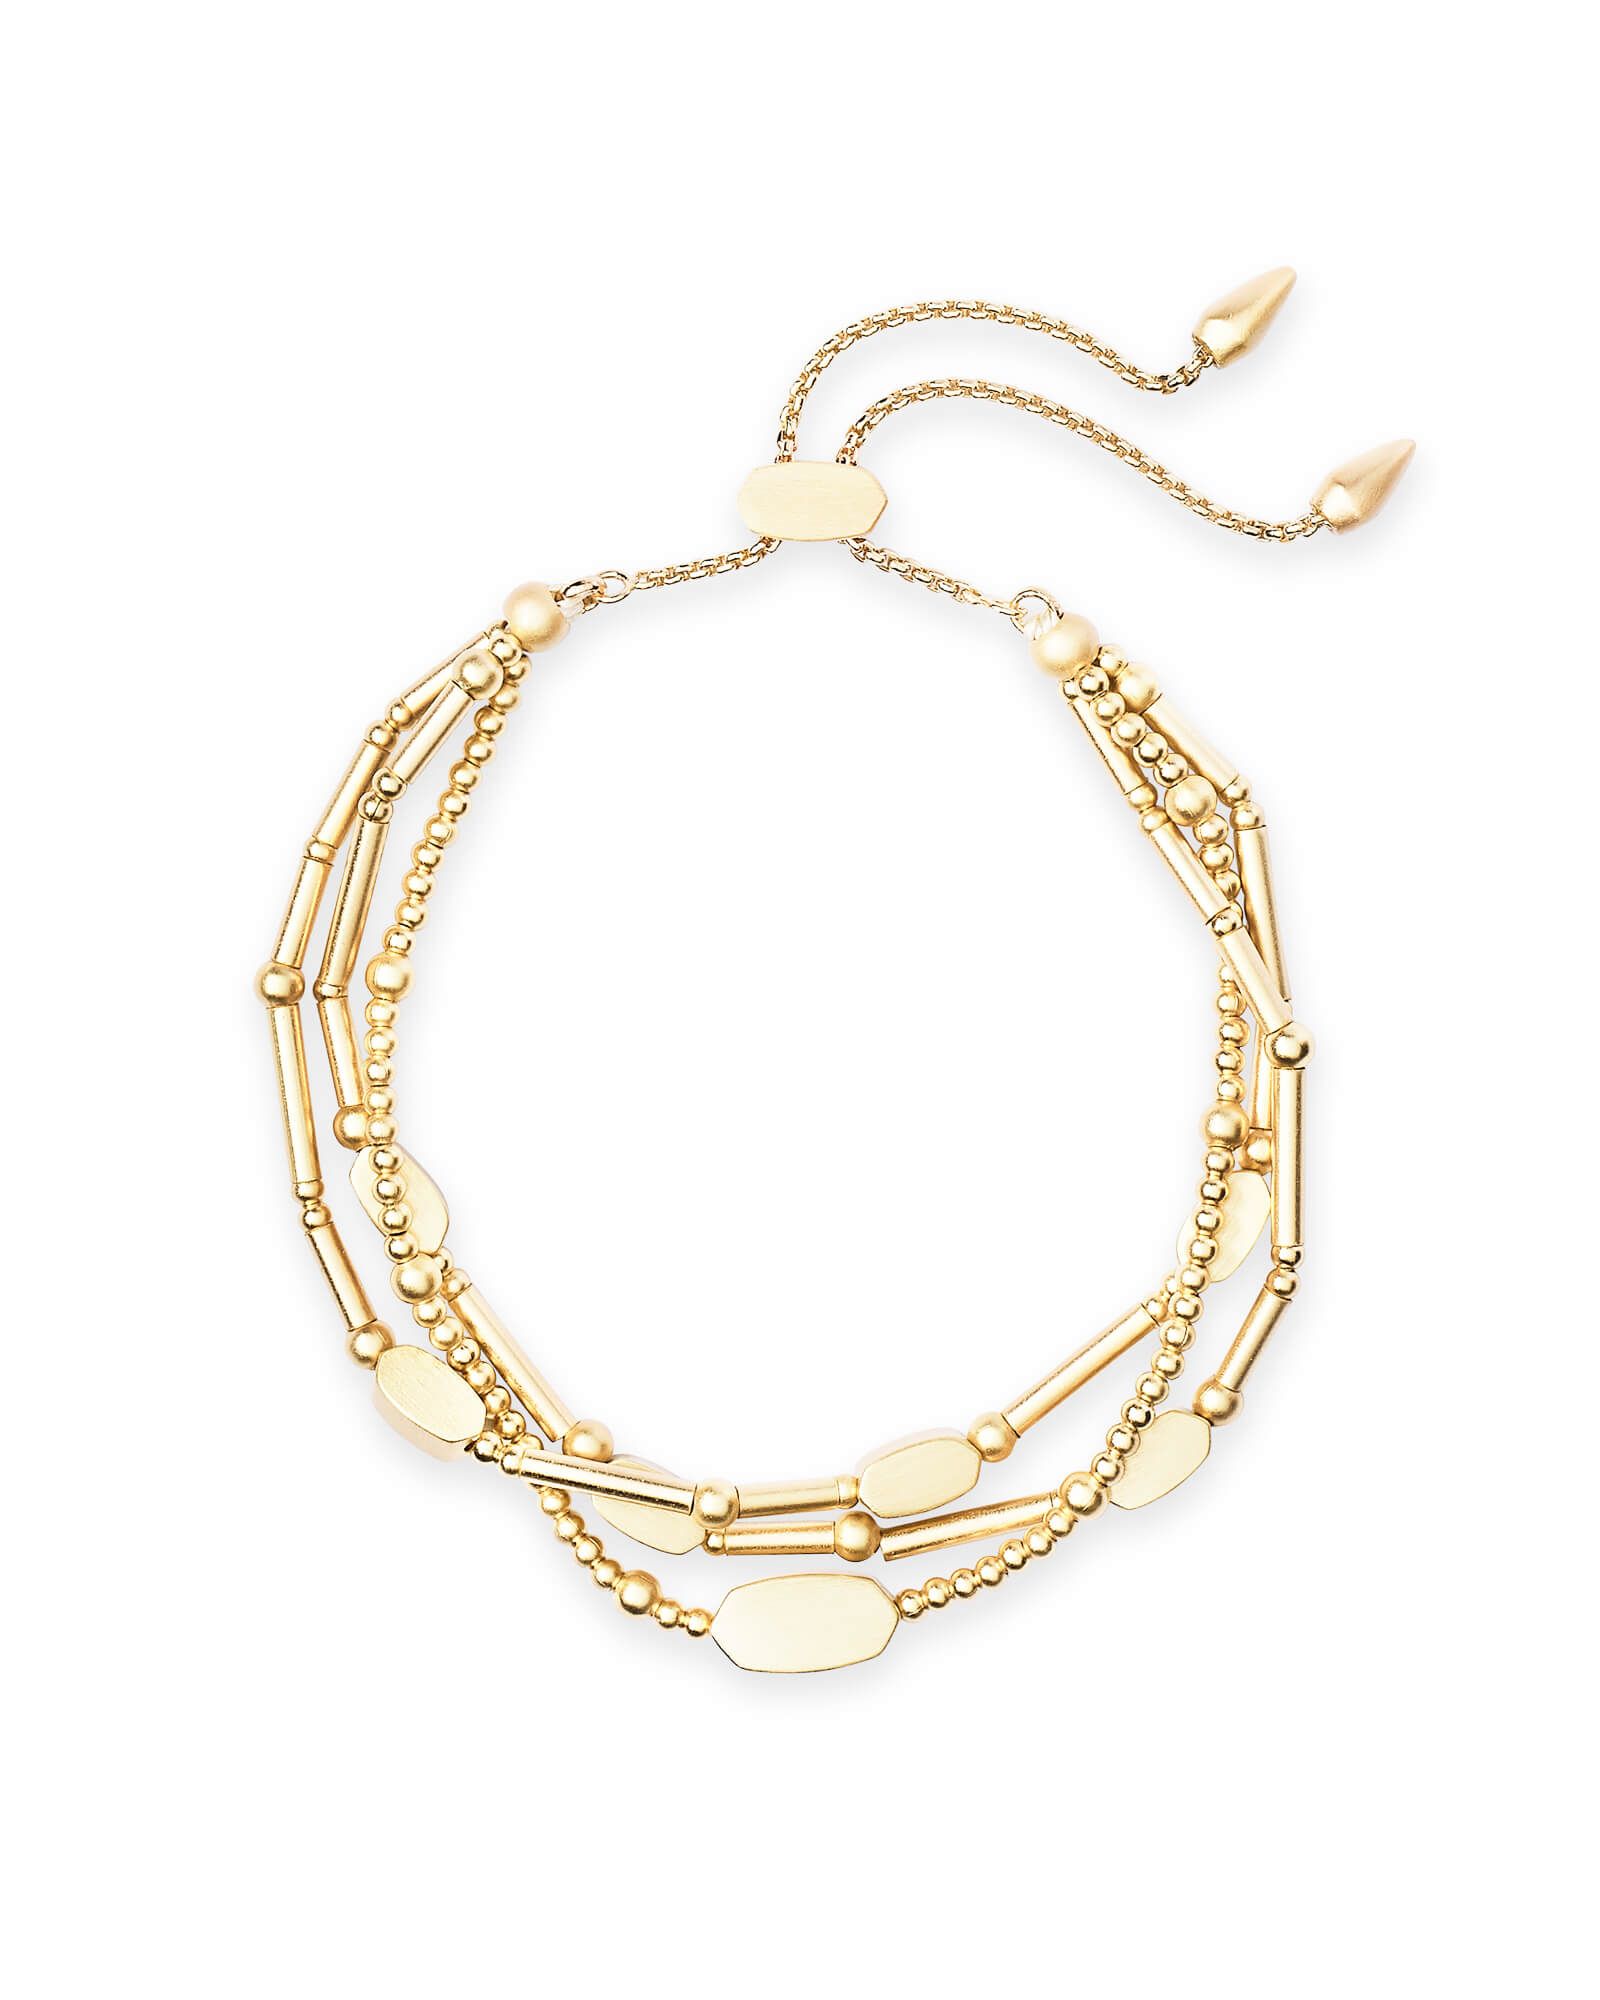 Chantal Beaded Bracelet in Gold | Kendra Scott | Kendra Scott